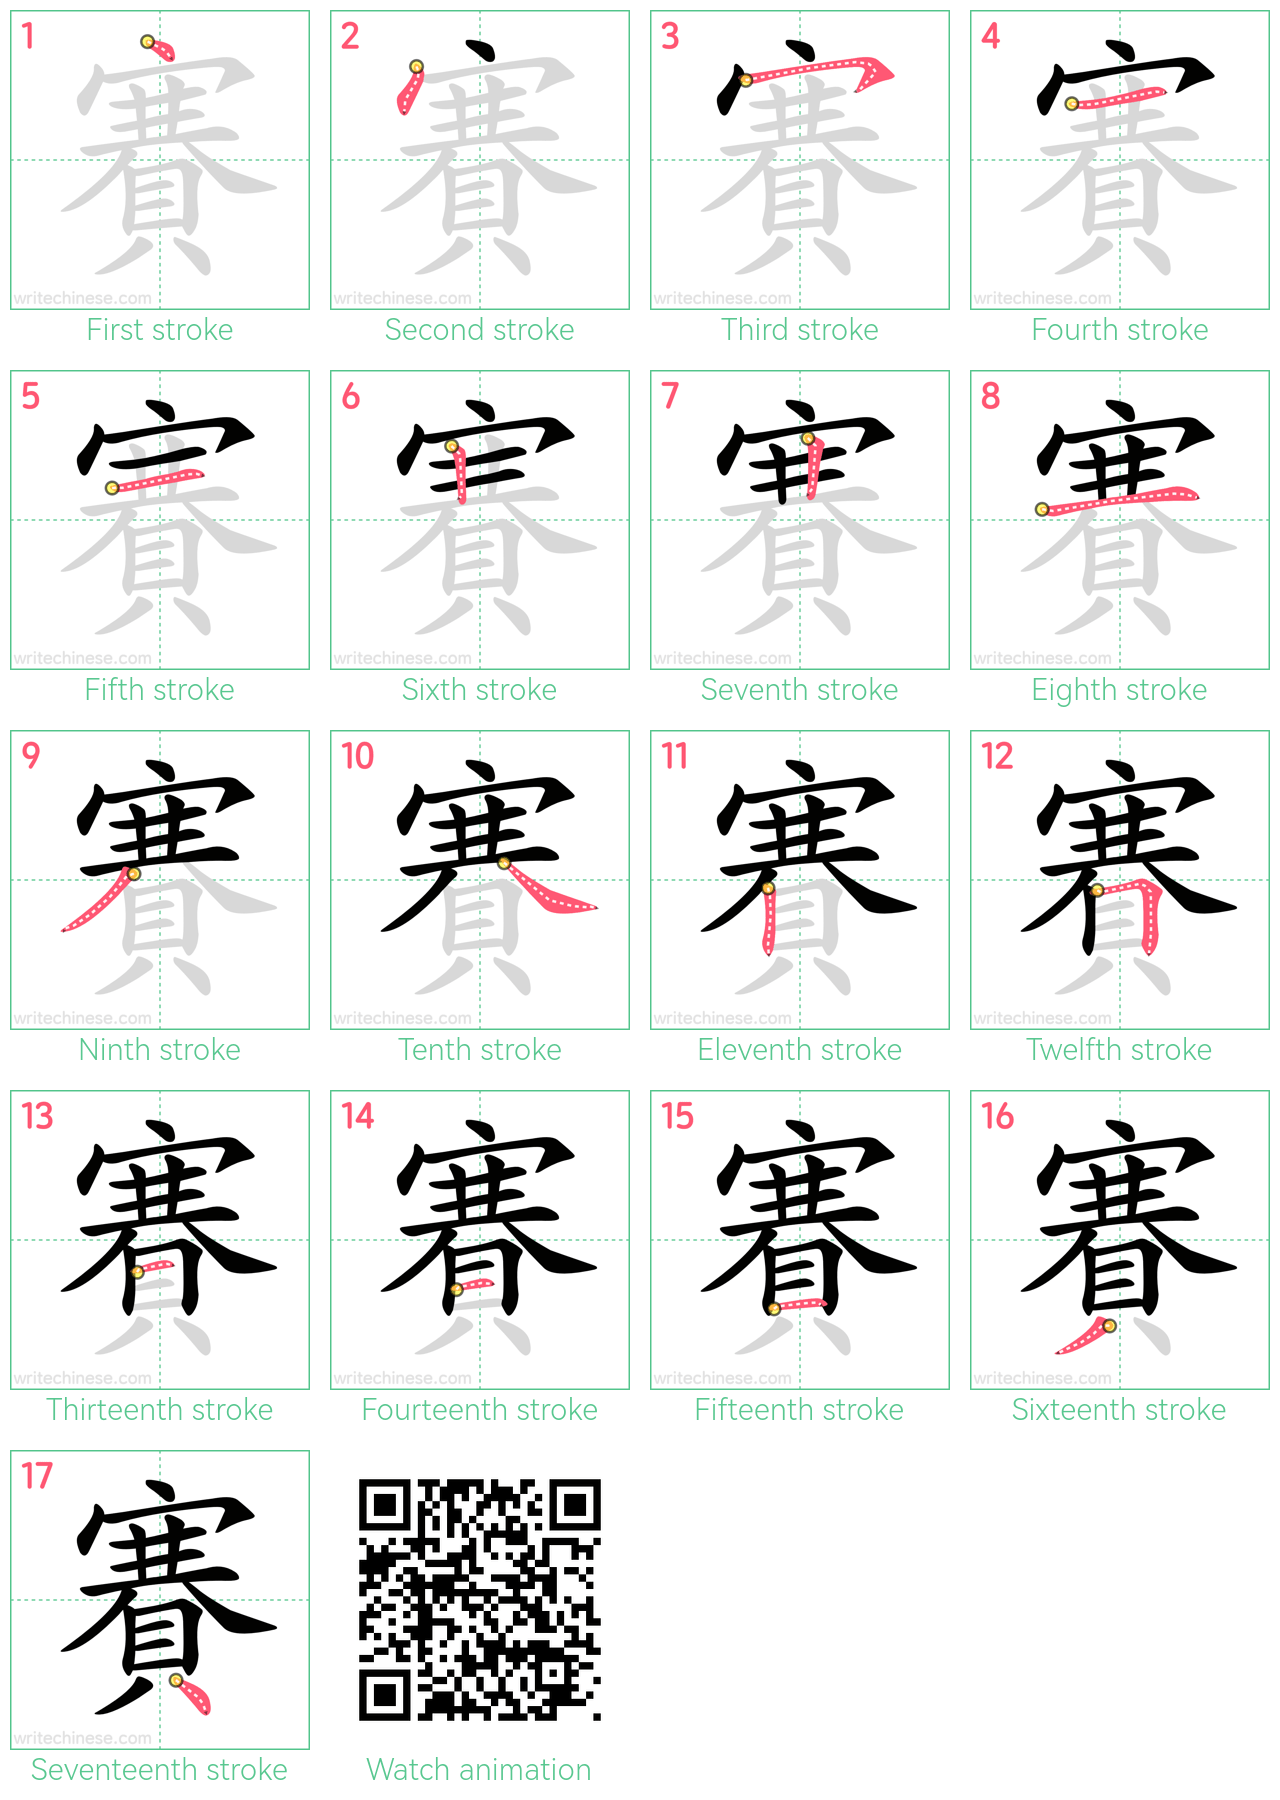 賽 step-by-step stroke order diagrams